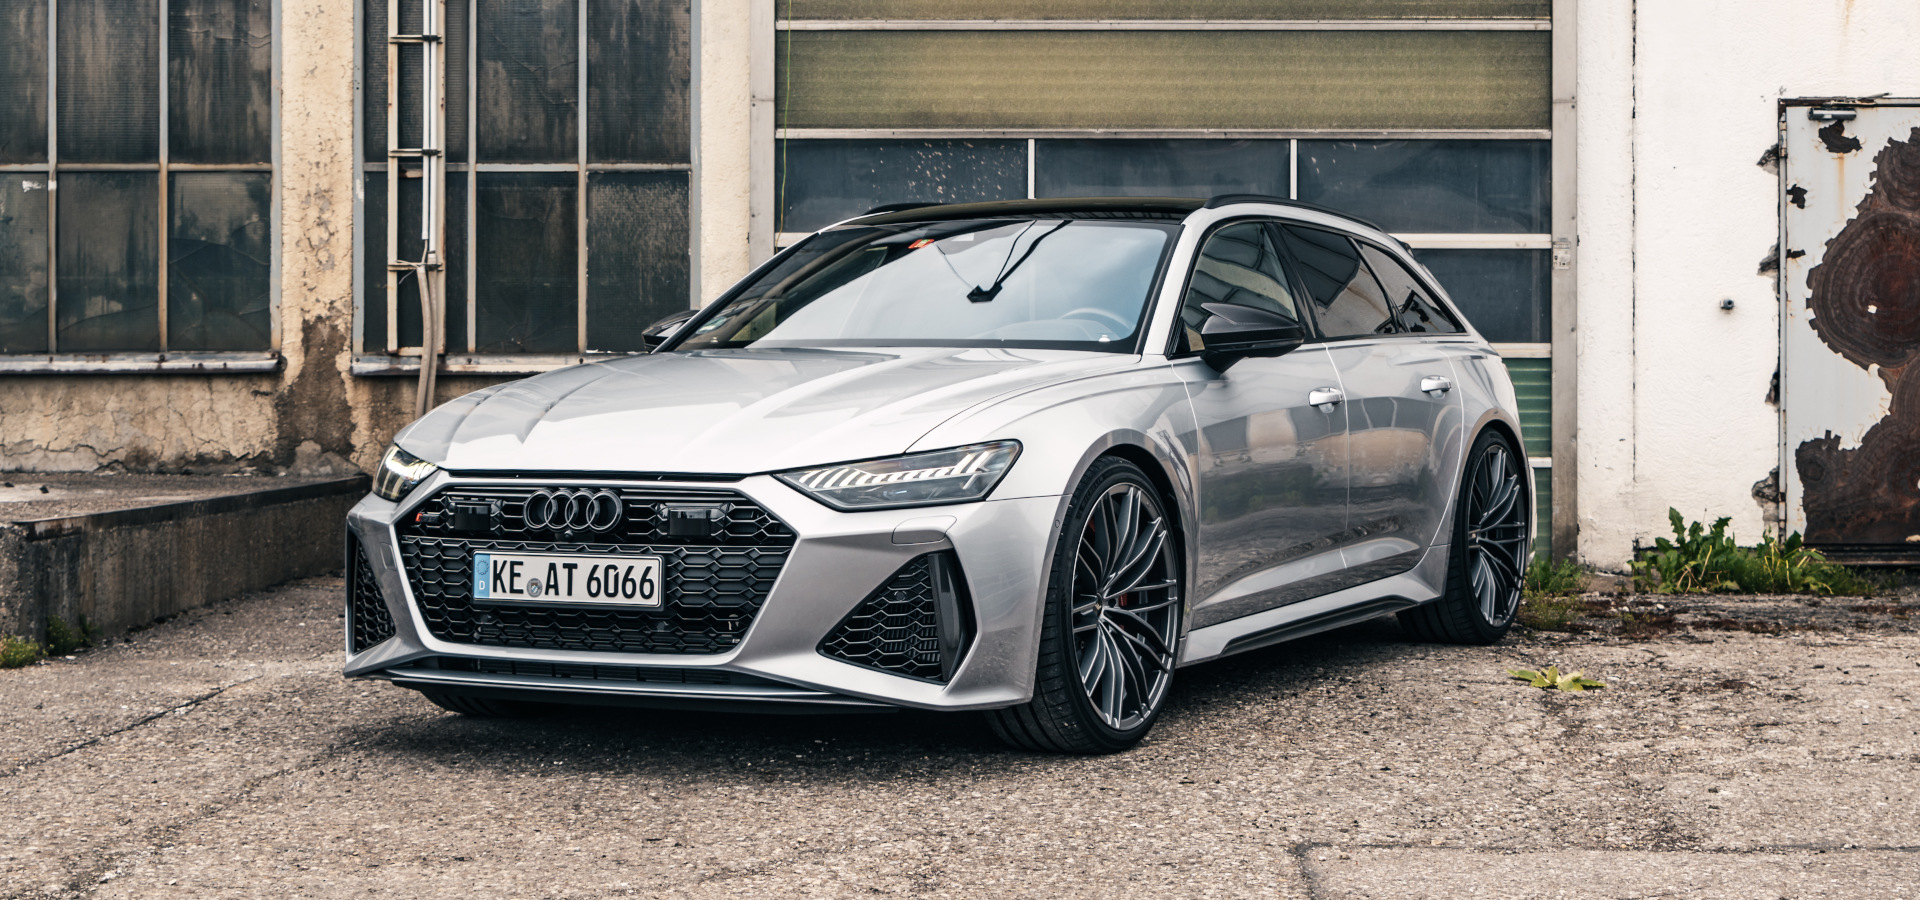 Audi Rs Felgen 2020